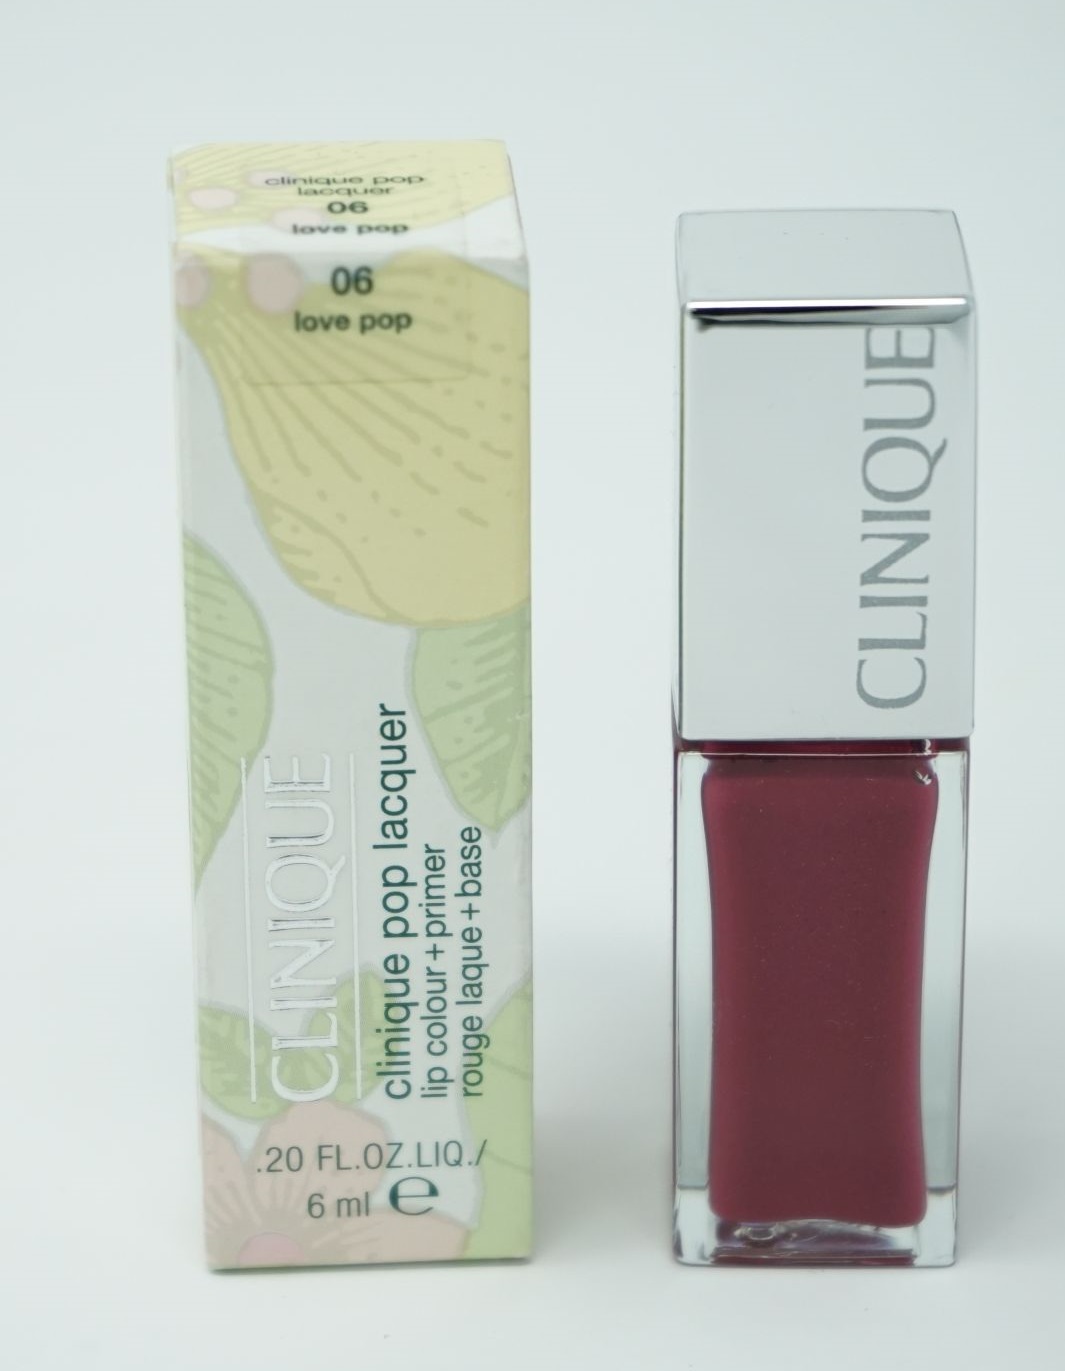 Clinique Pop Lacquer lip colour + primer rouge Lippenstift  6ml / 06 love pop